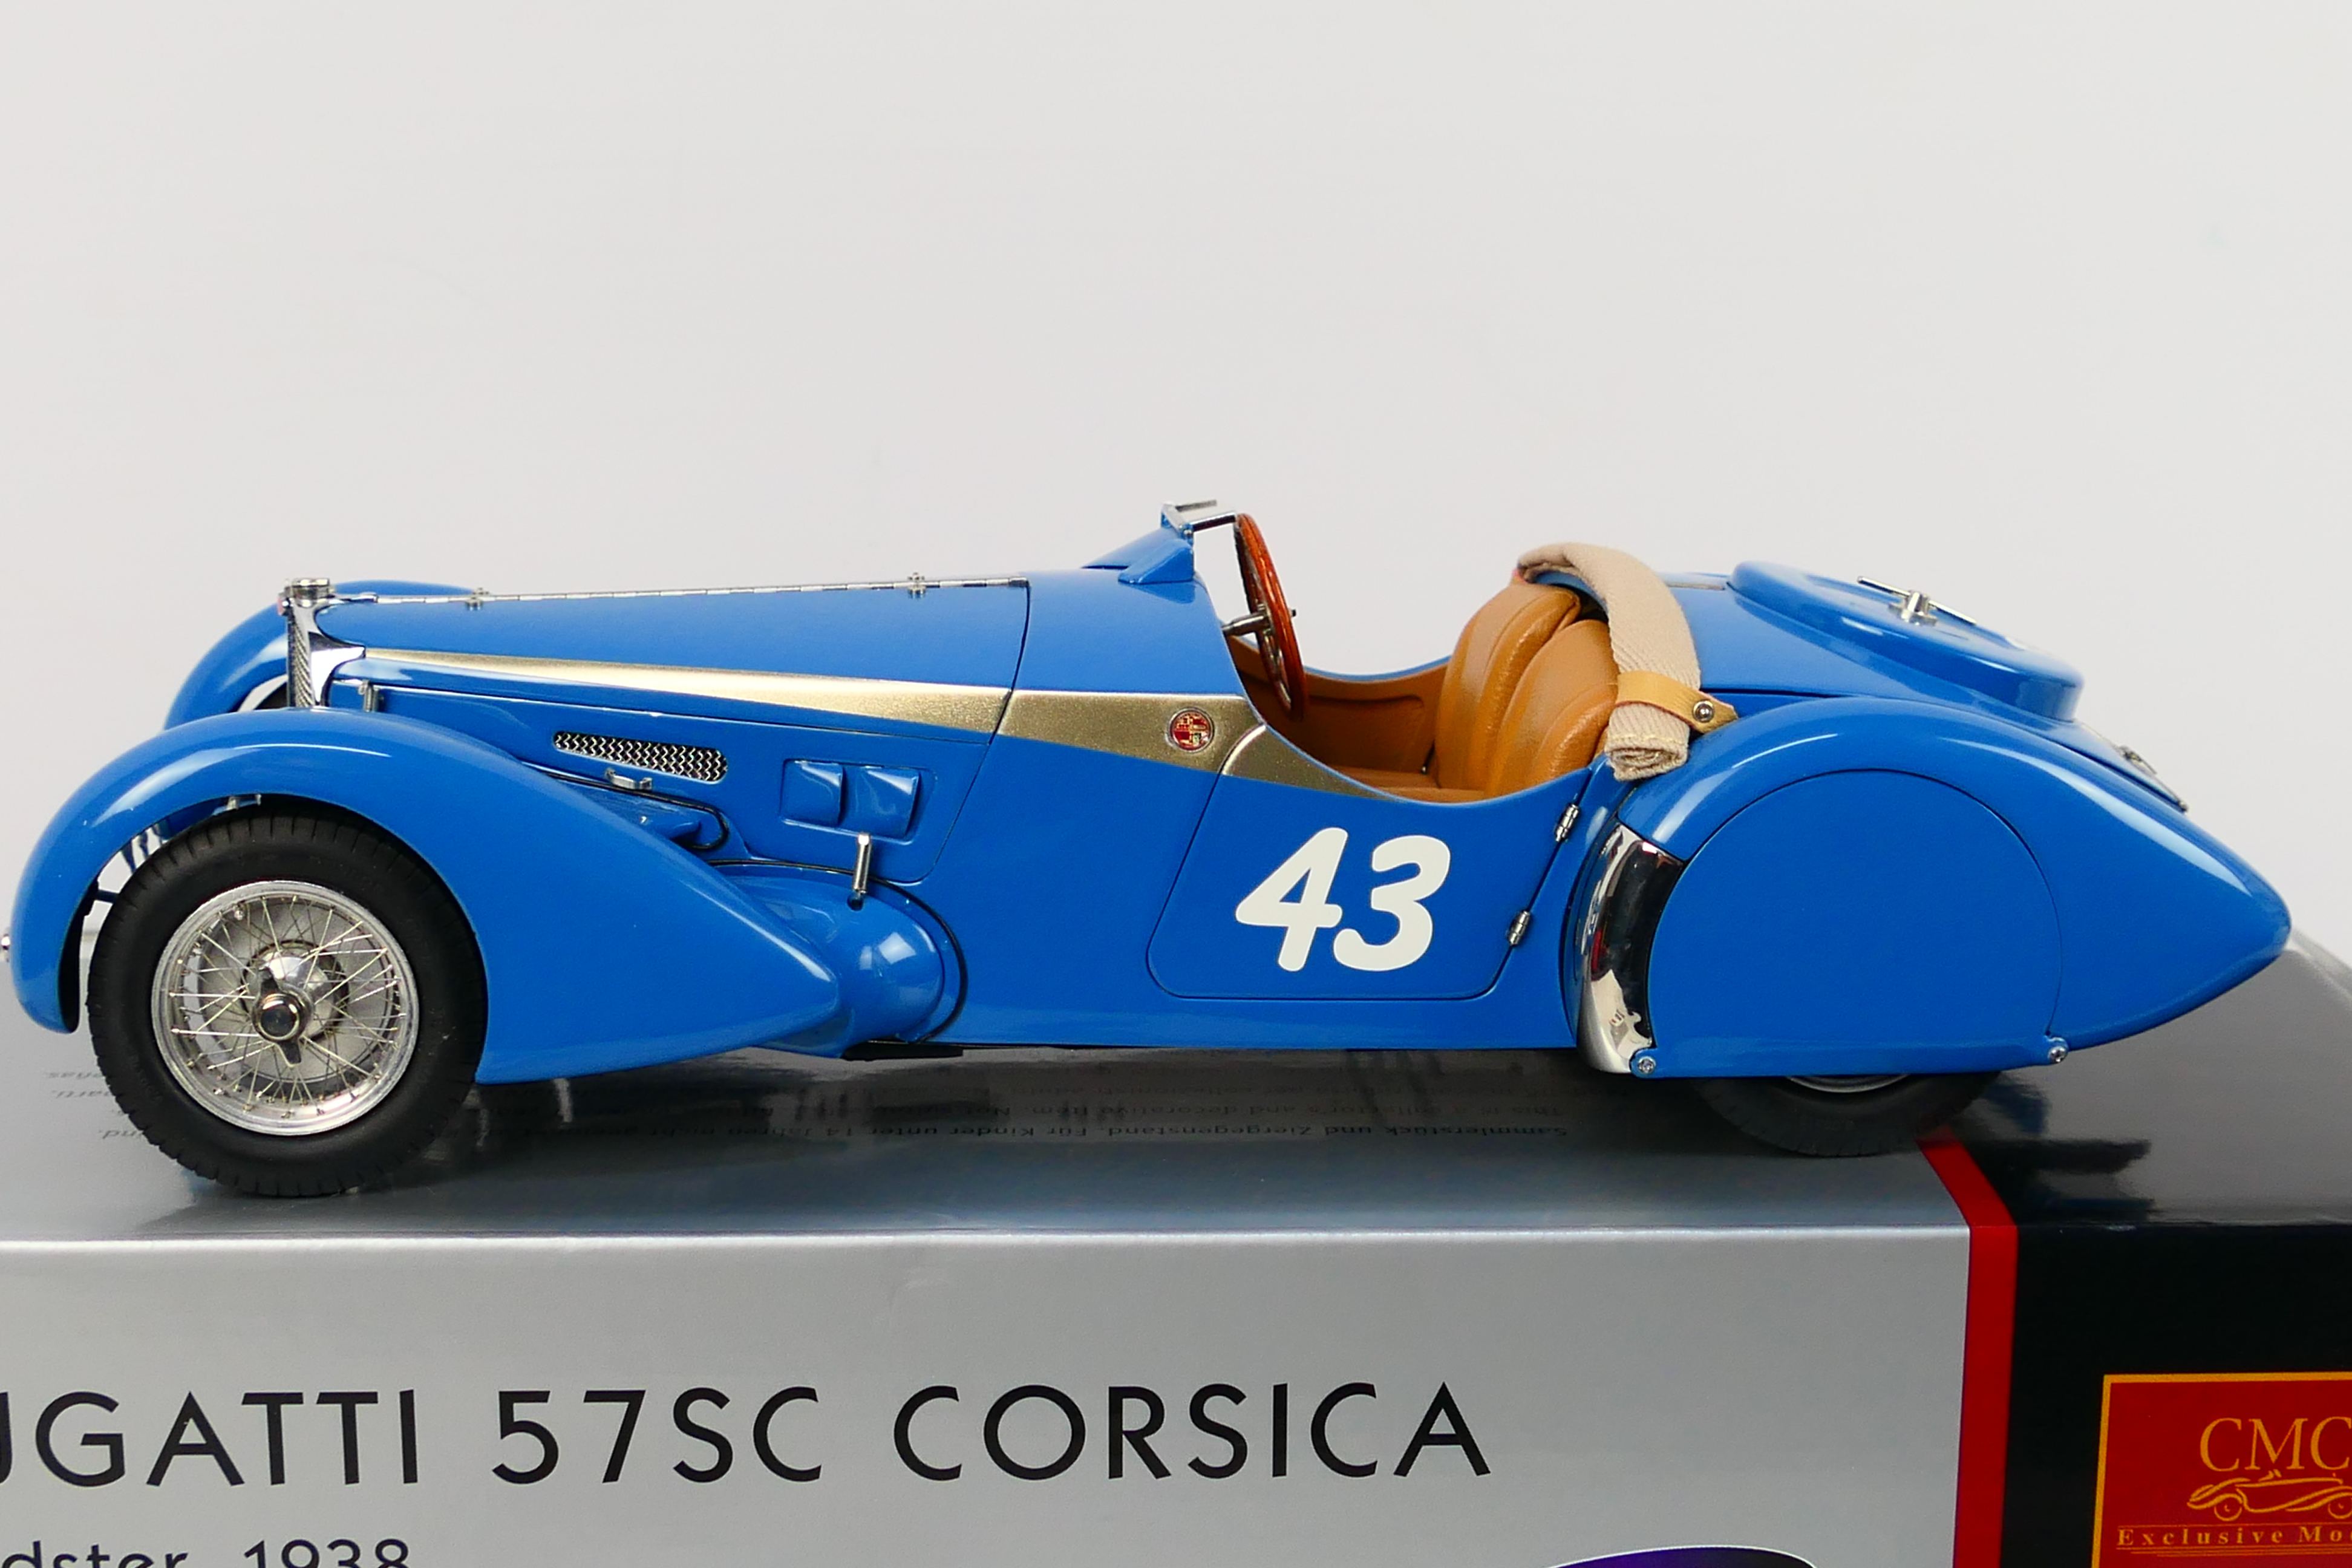 CMC - A limited edition 1938 Bugatti 57 SC Corsica in the rare Roadster Sport finish in 1:18 scale - Image 3 of 9